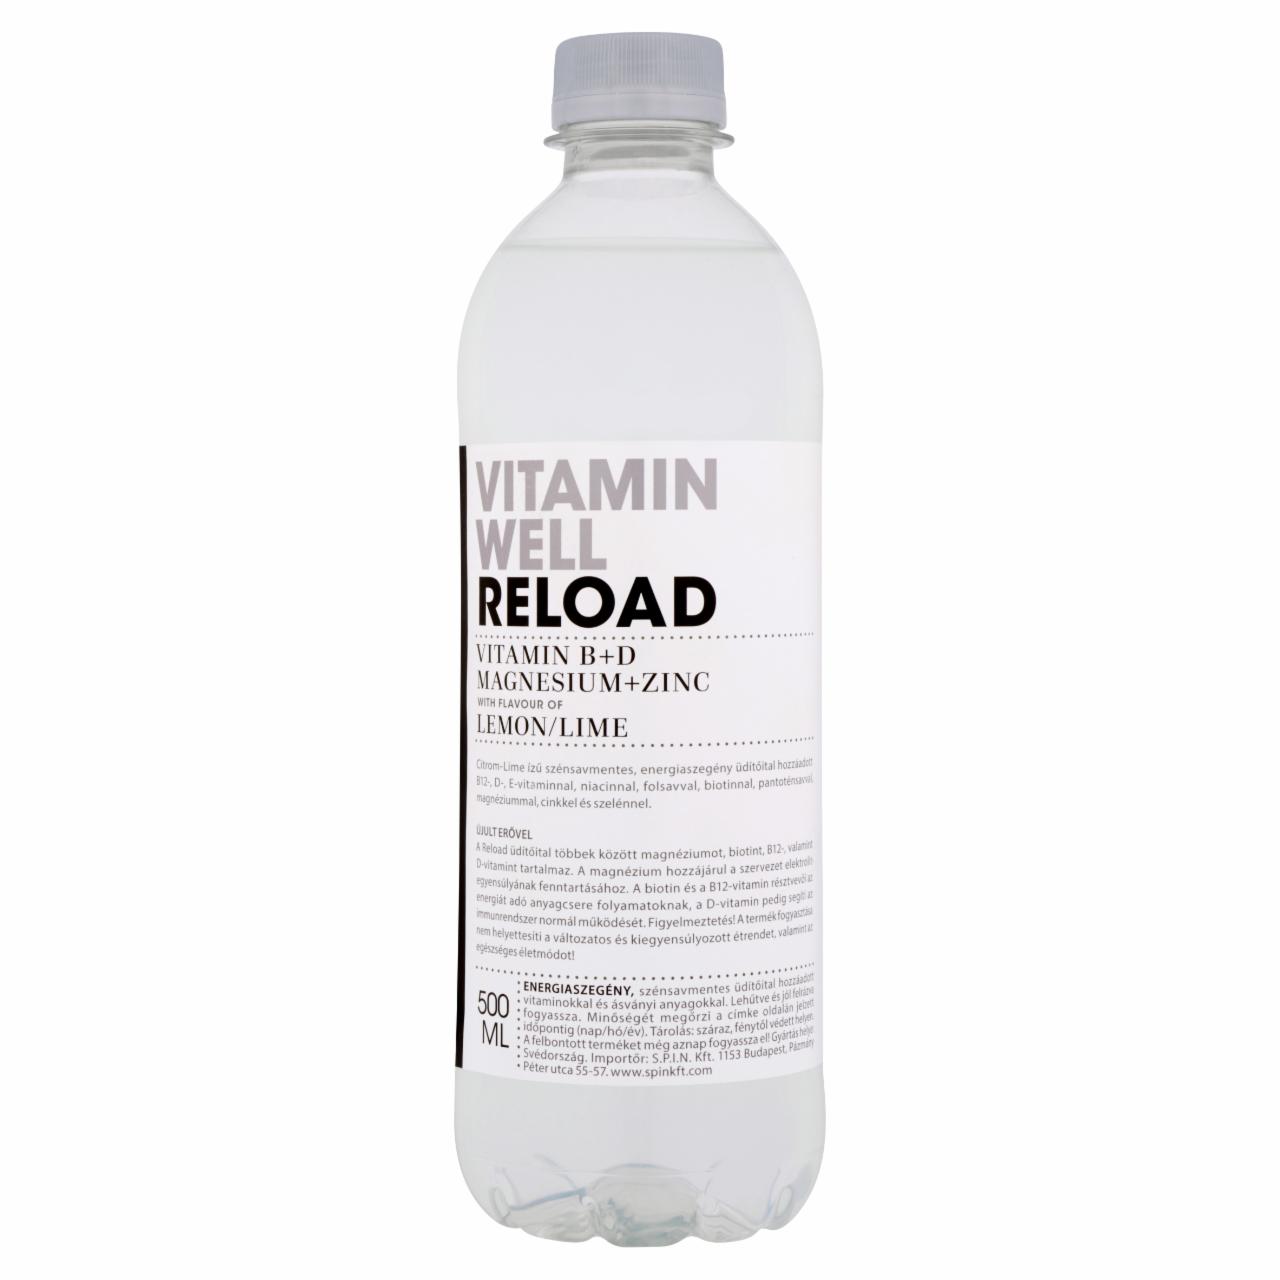 Képek - Vitamin Well Reload citrom-lime ízű, szénsavmentes, energiaszegény üdítőital 500 ml